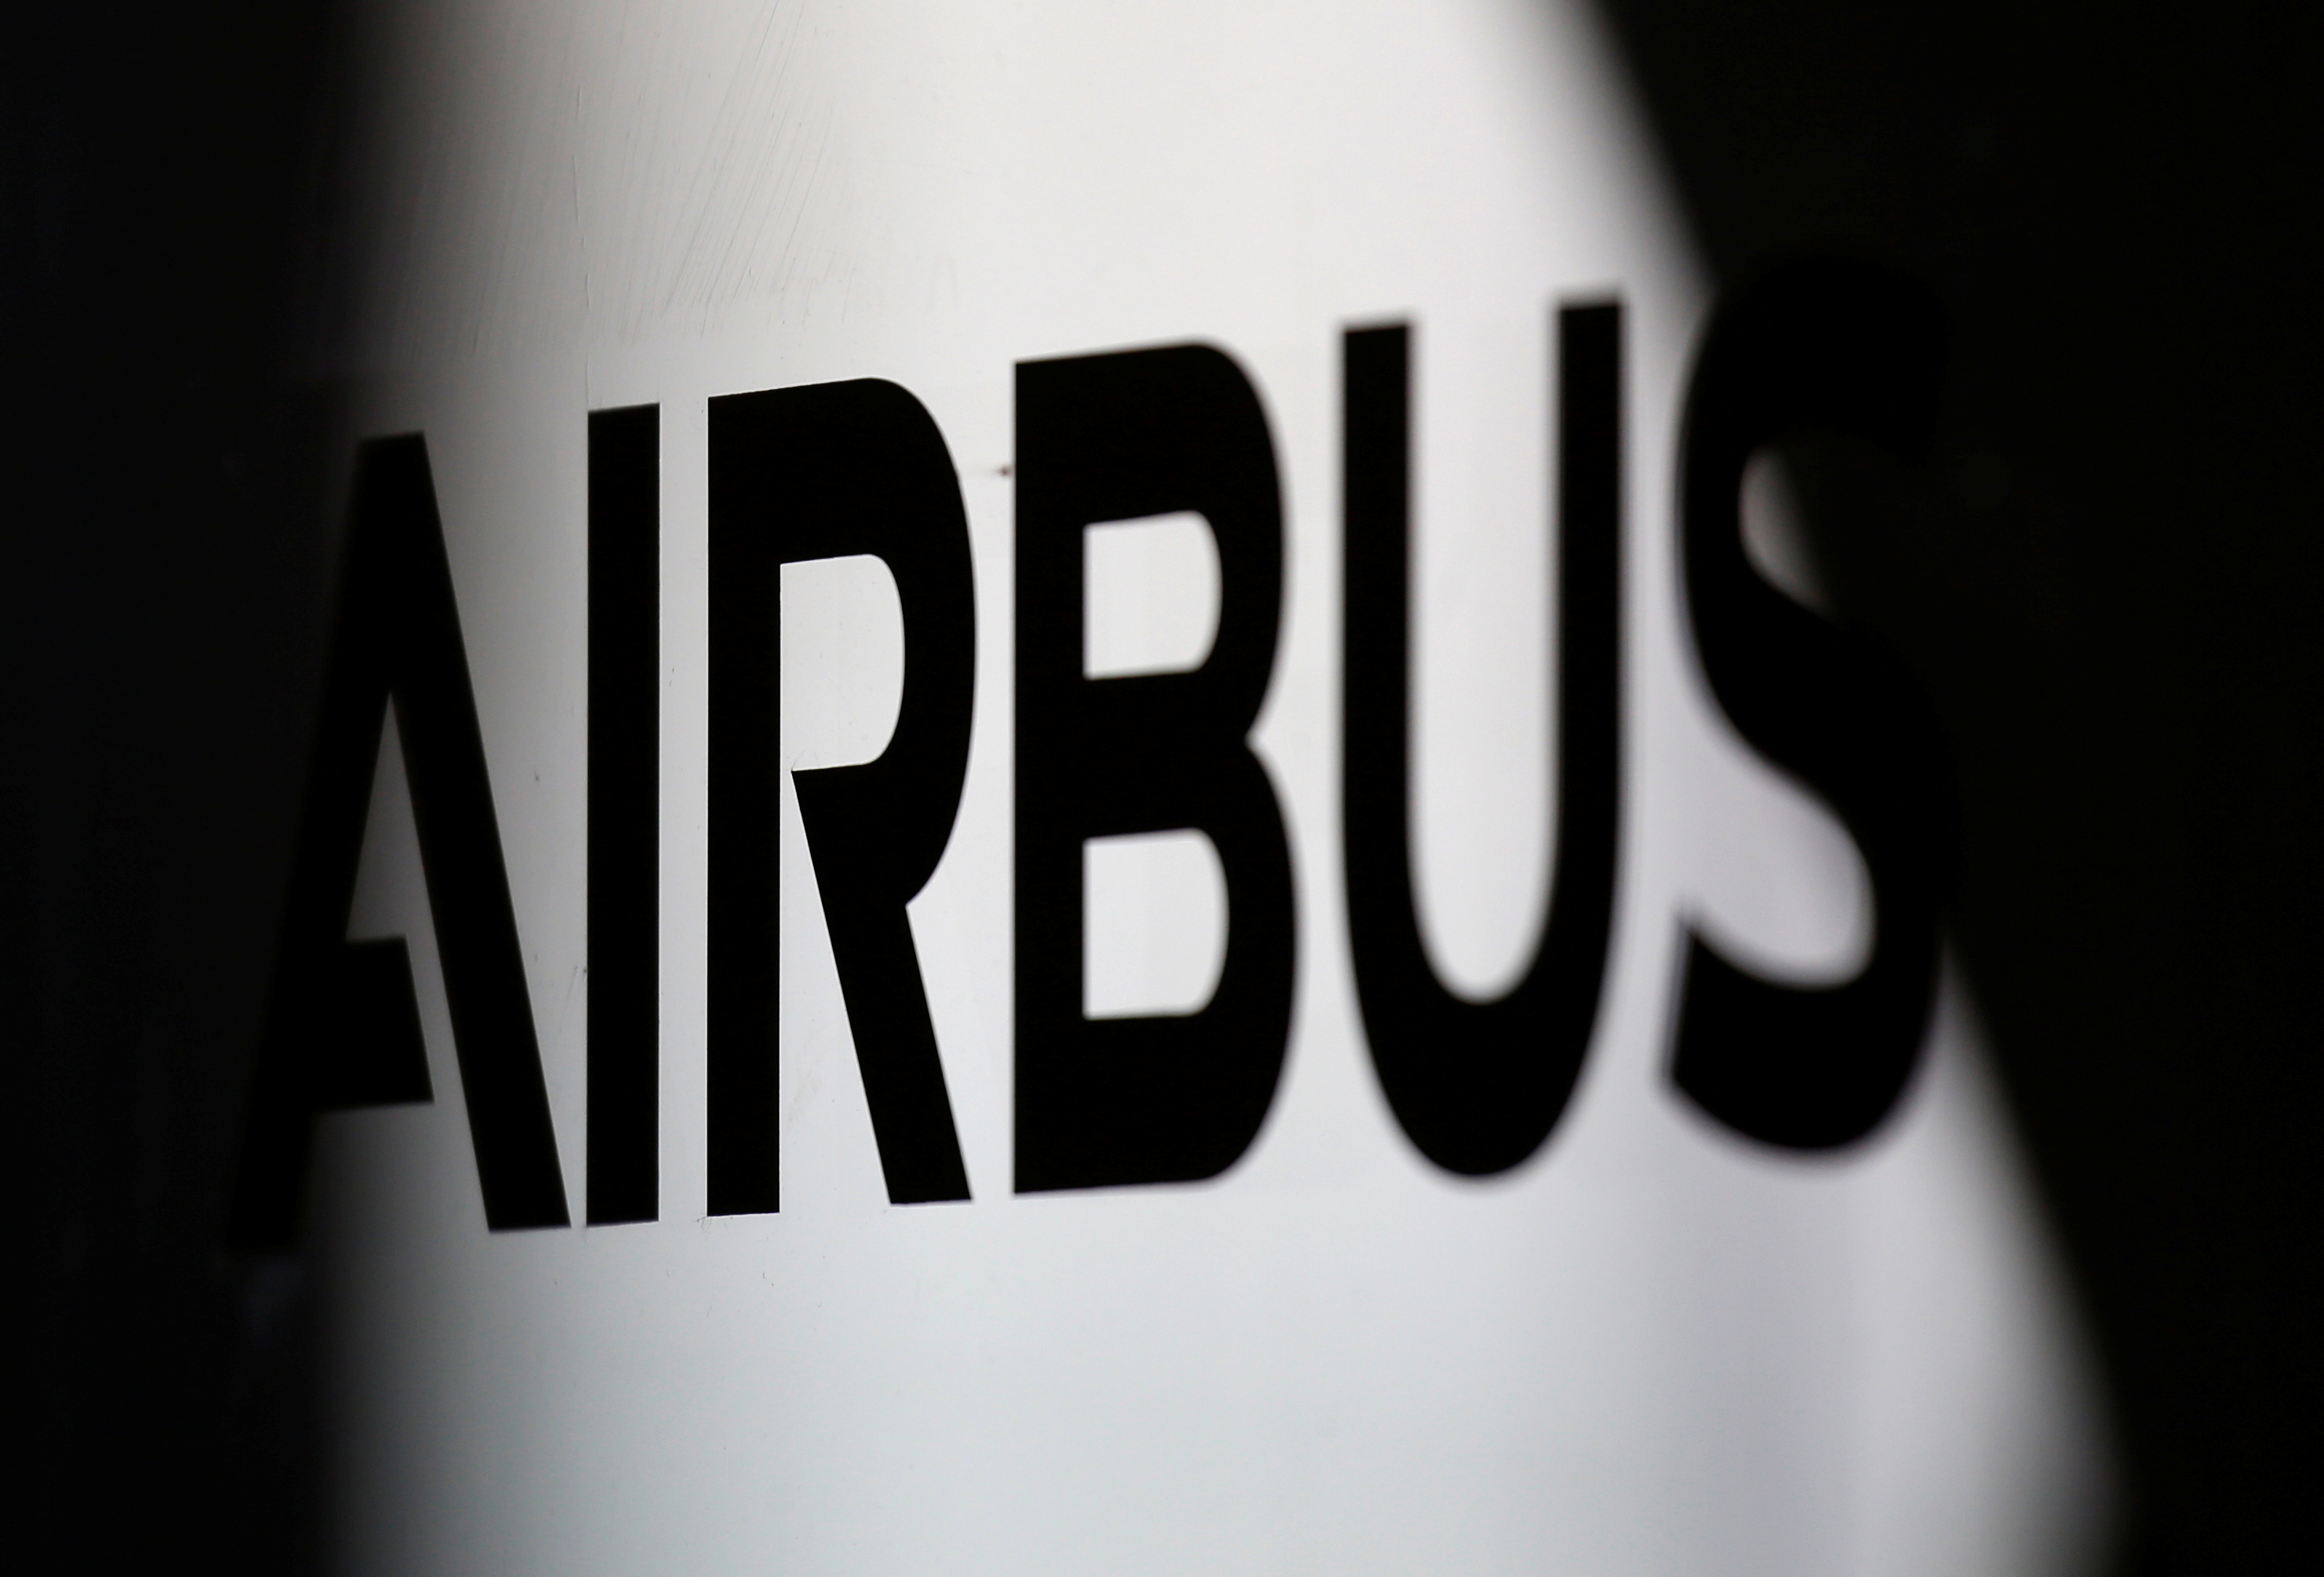 Airbus prévoit de débourser 3,6 milliards d'euros pour solder les enquêtes de corruption